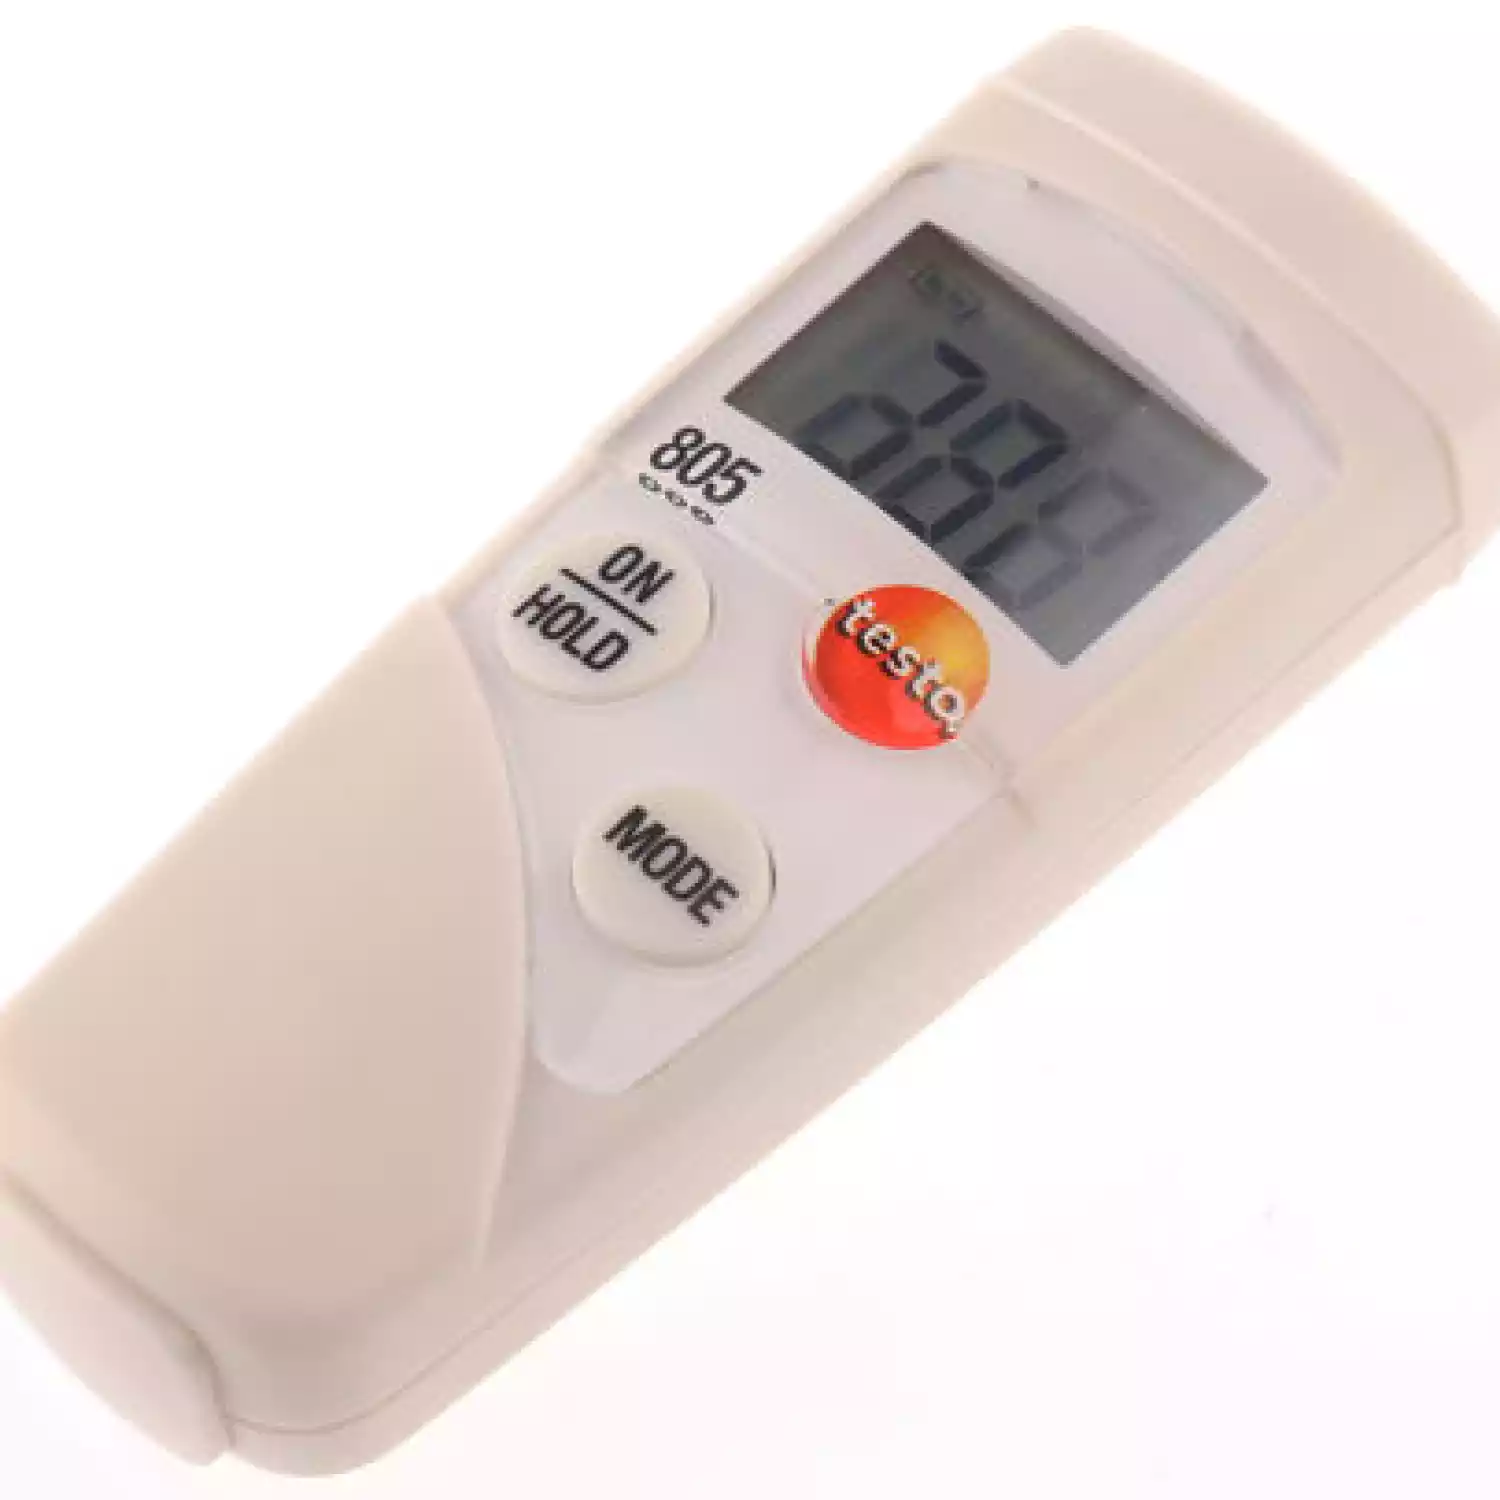 Testo 805 мини-термометр инфракрасный карманный с защитным чехлом TopSafe (комплект для быстрых измерений) - 2